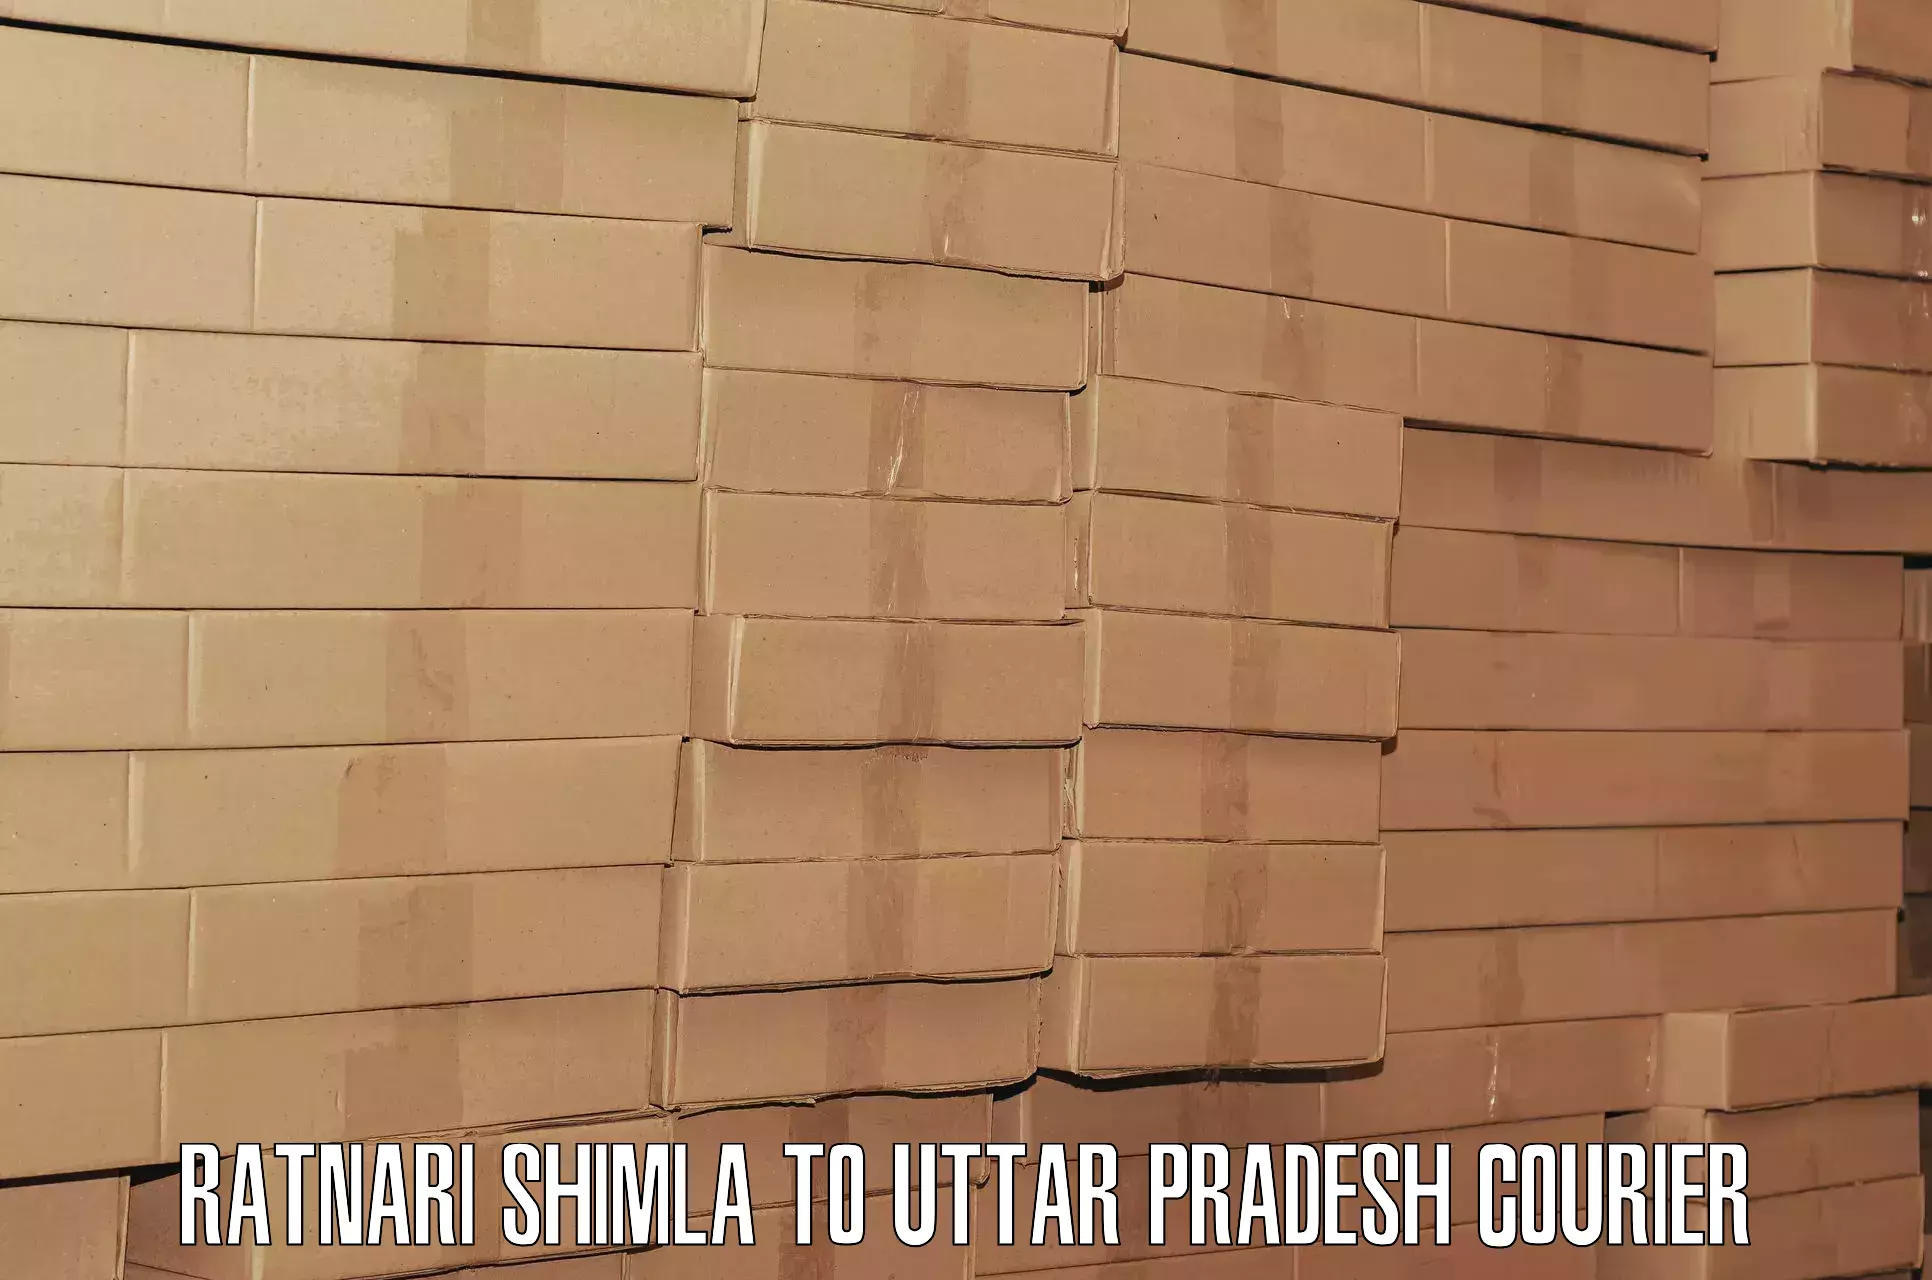 Luggage delivery system Ratnari Shimla to Varanasi